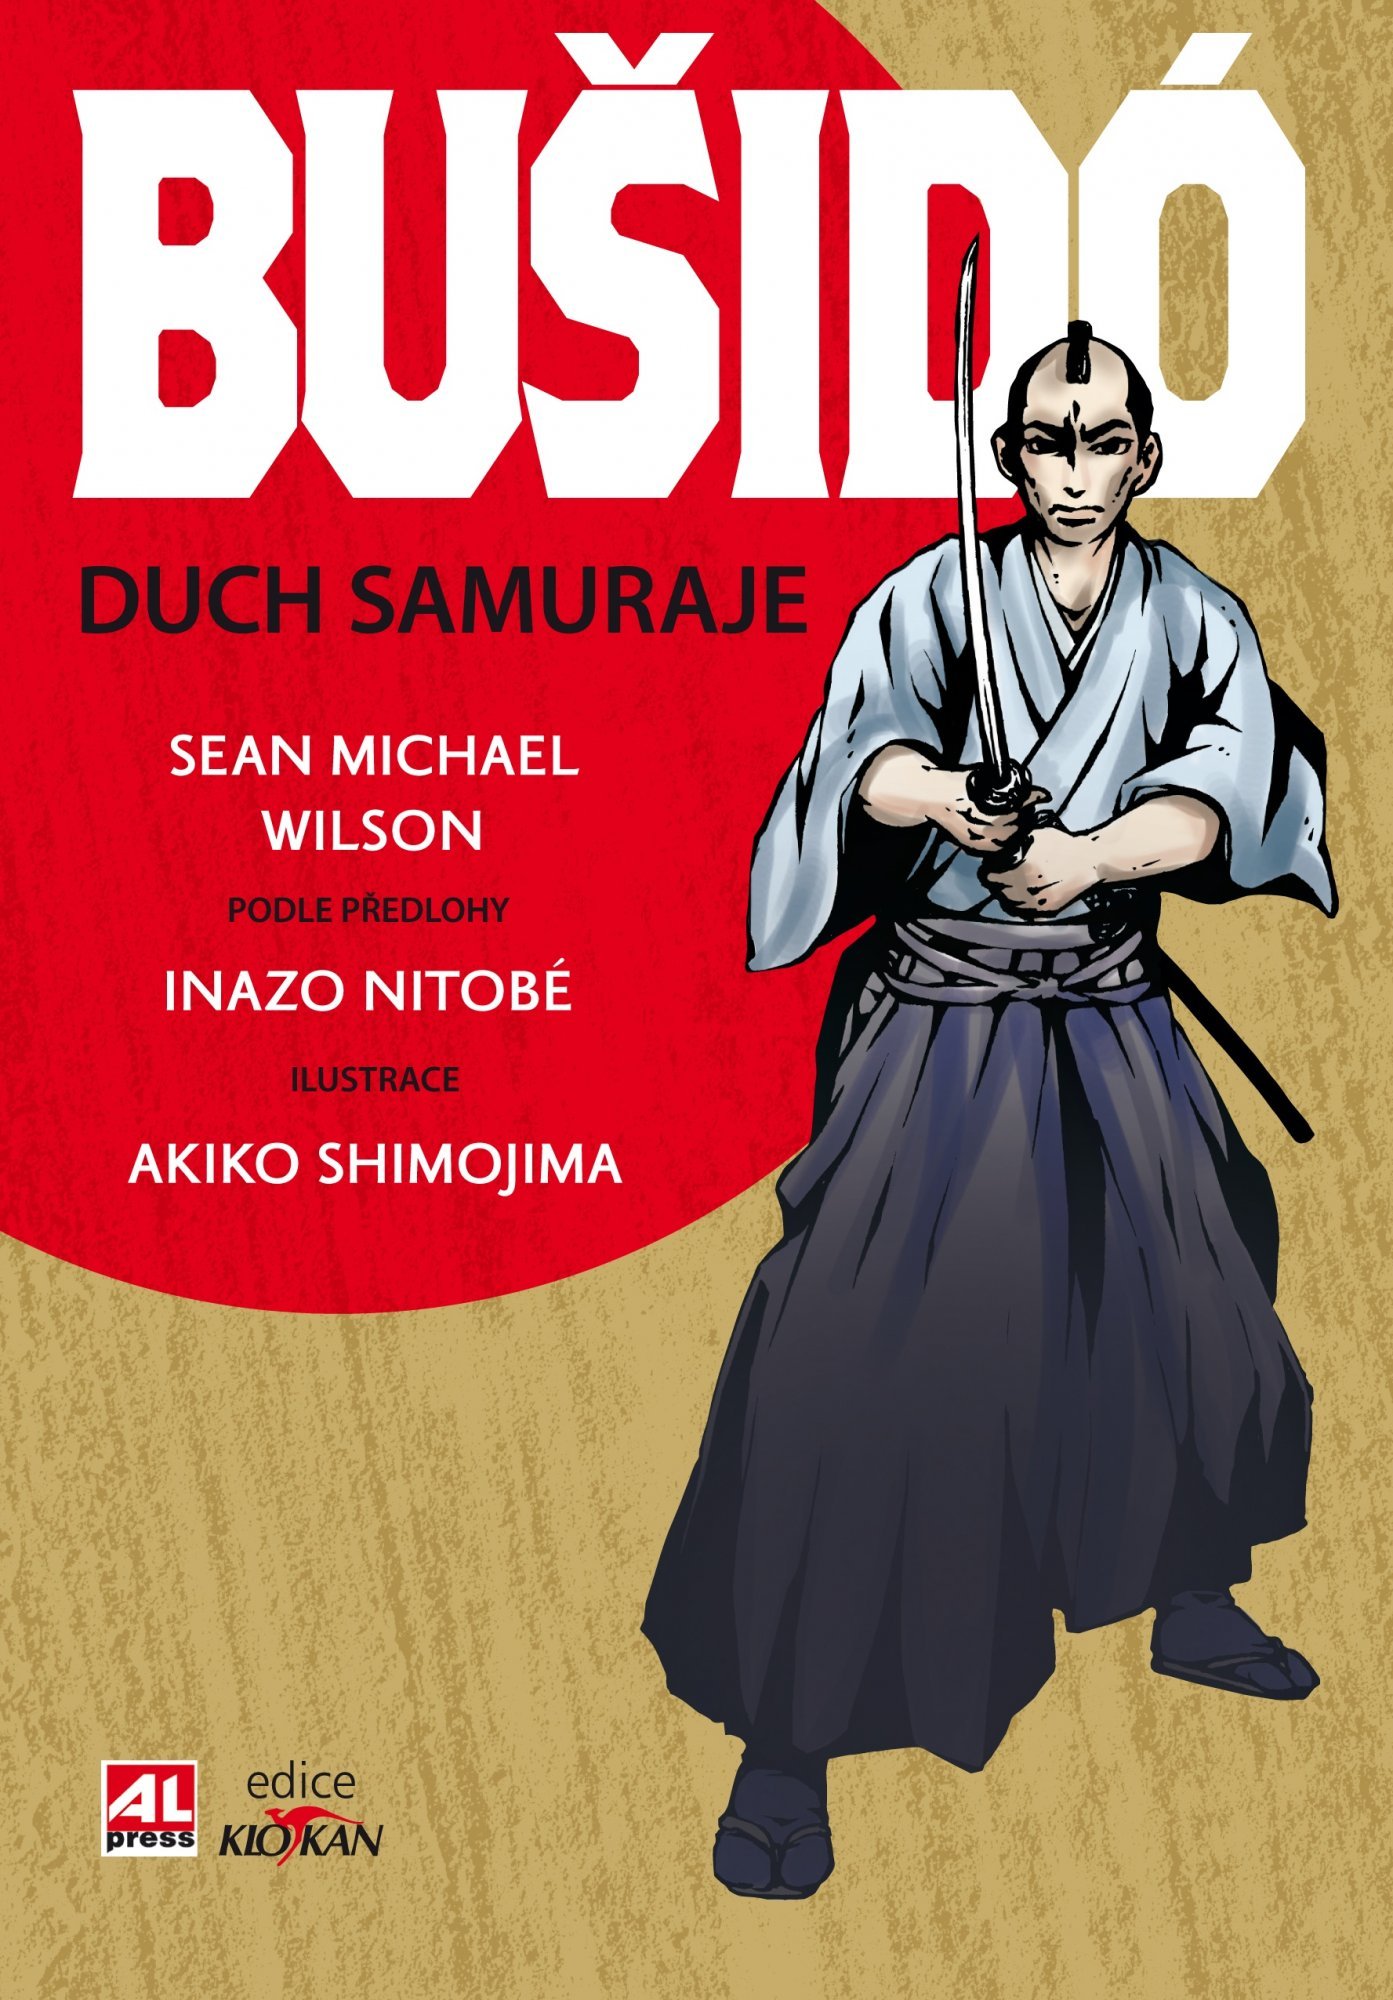 Bušidó - Duch samuraje - Inazo Nitobé